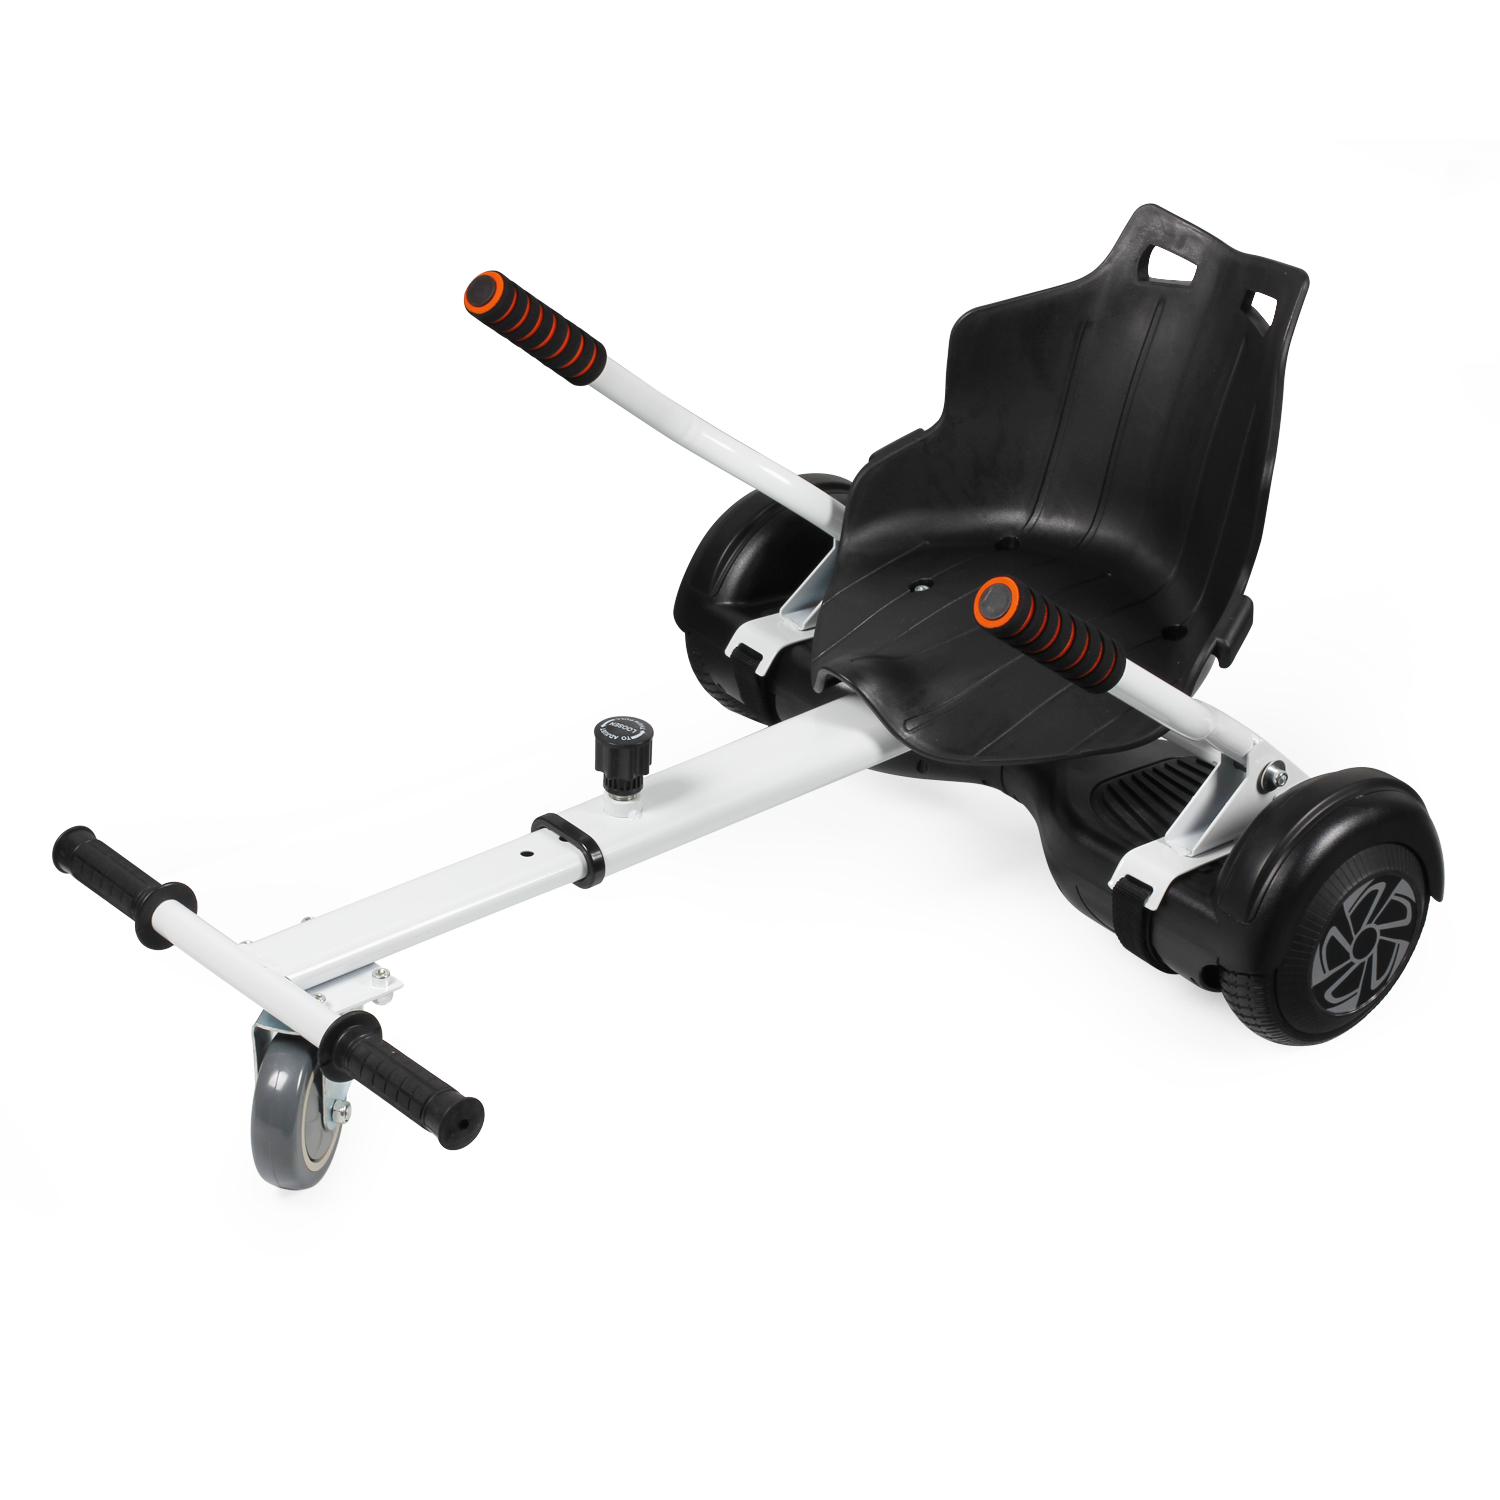 Adjustable Hoverkart Premium Go Kart For Segway Hoverboard Electric Scooter 